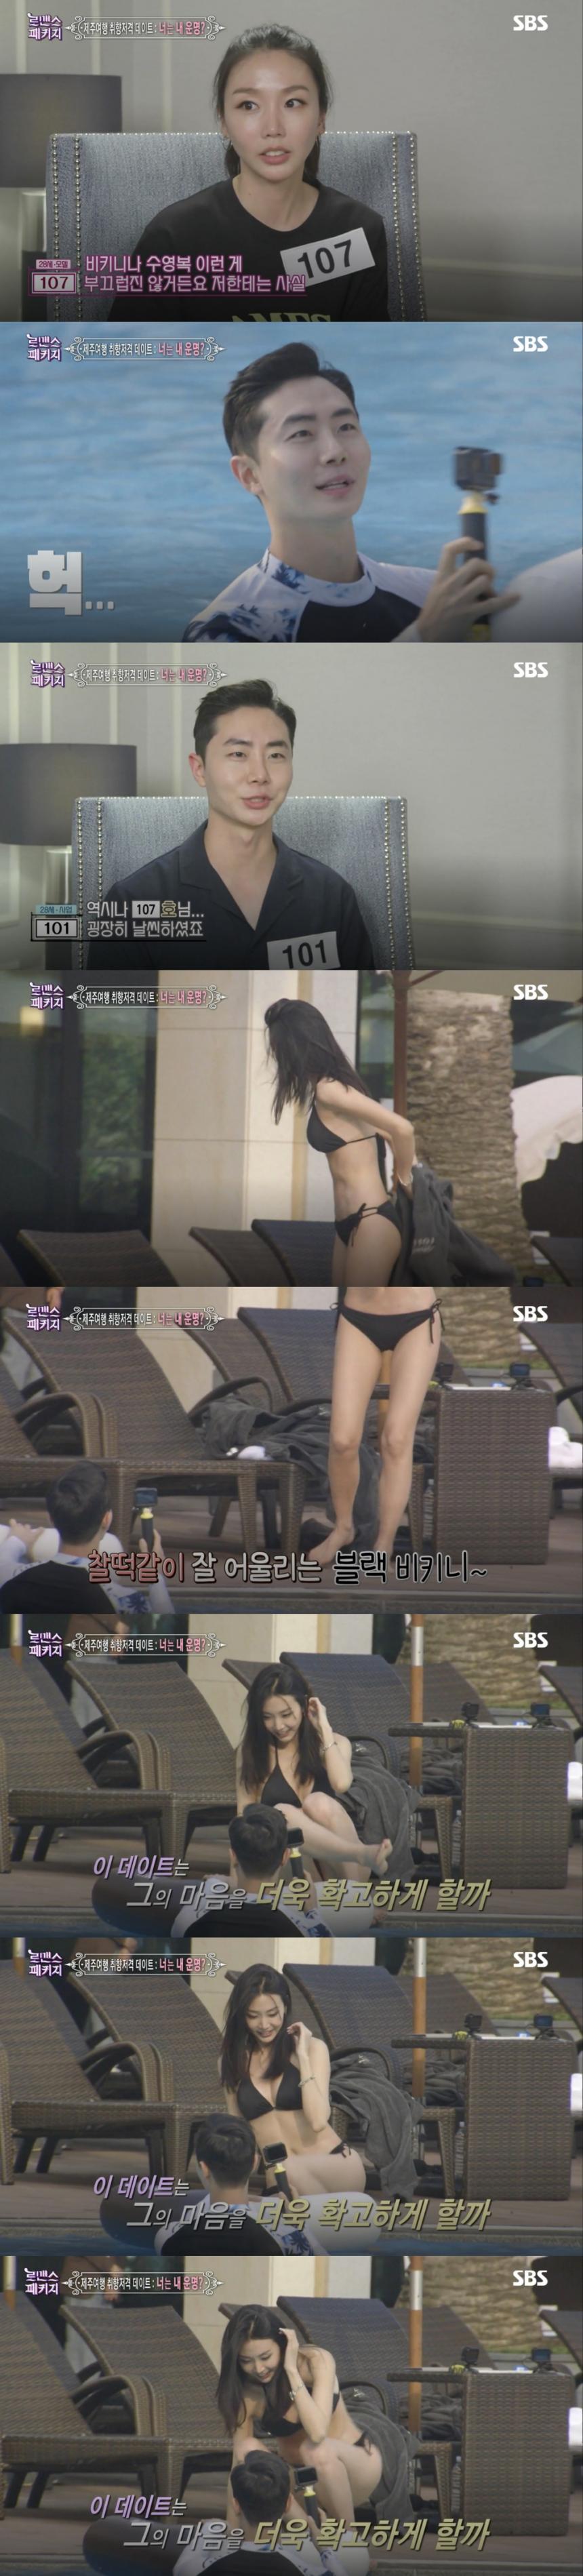 SBS ‘로맨스 패키지’ 방송 캡처